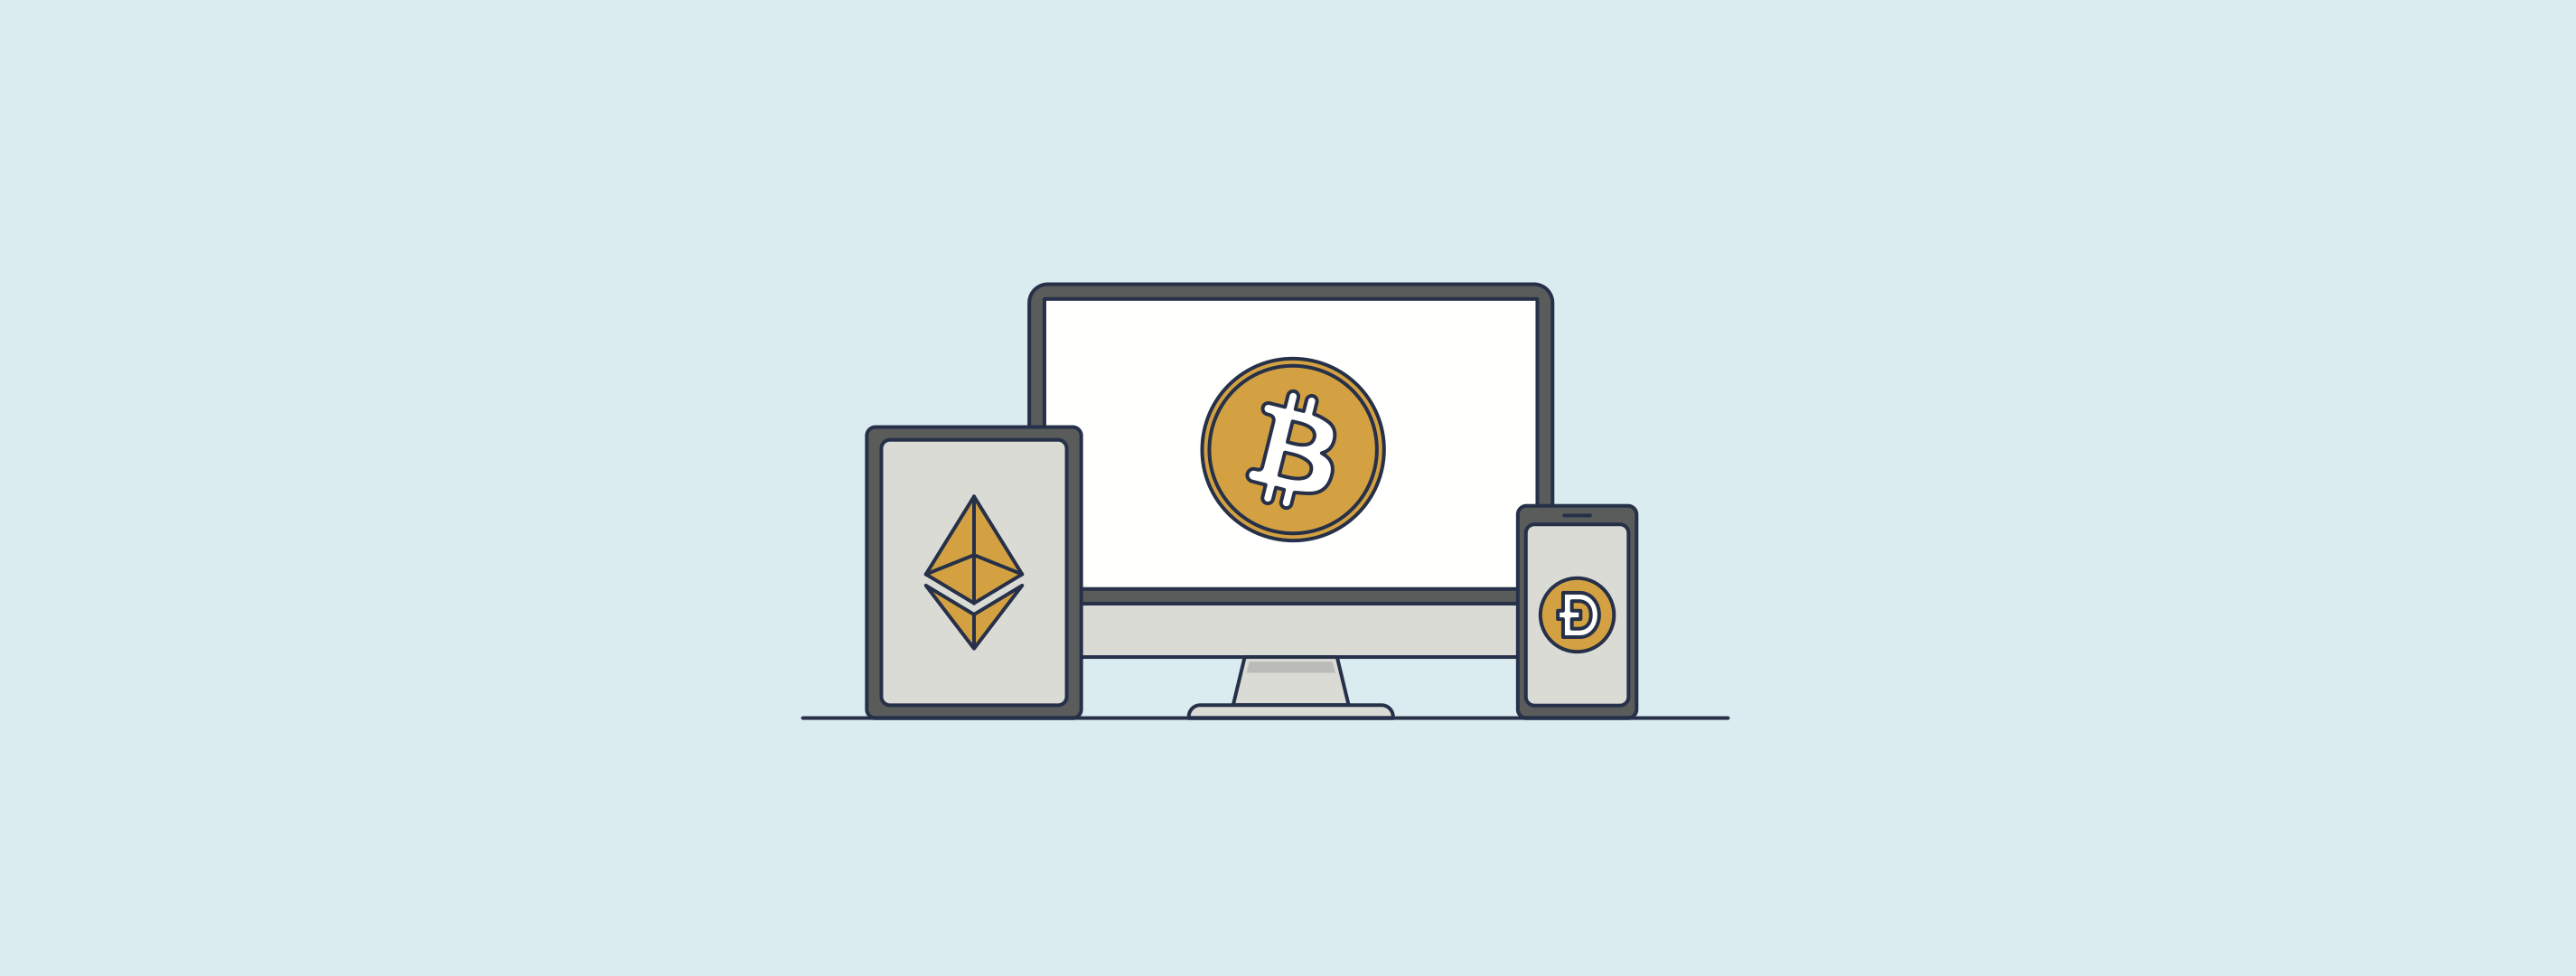 Kryptowährung: Bitcoins und Co. einfach erklärt